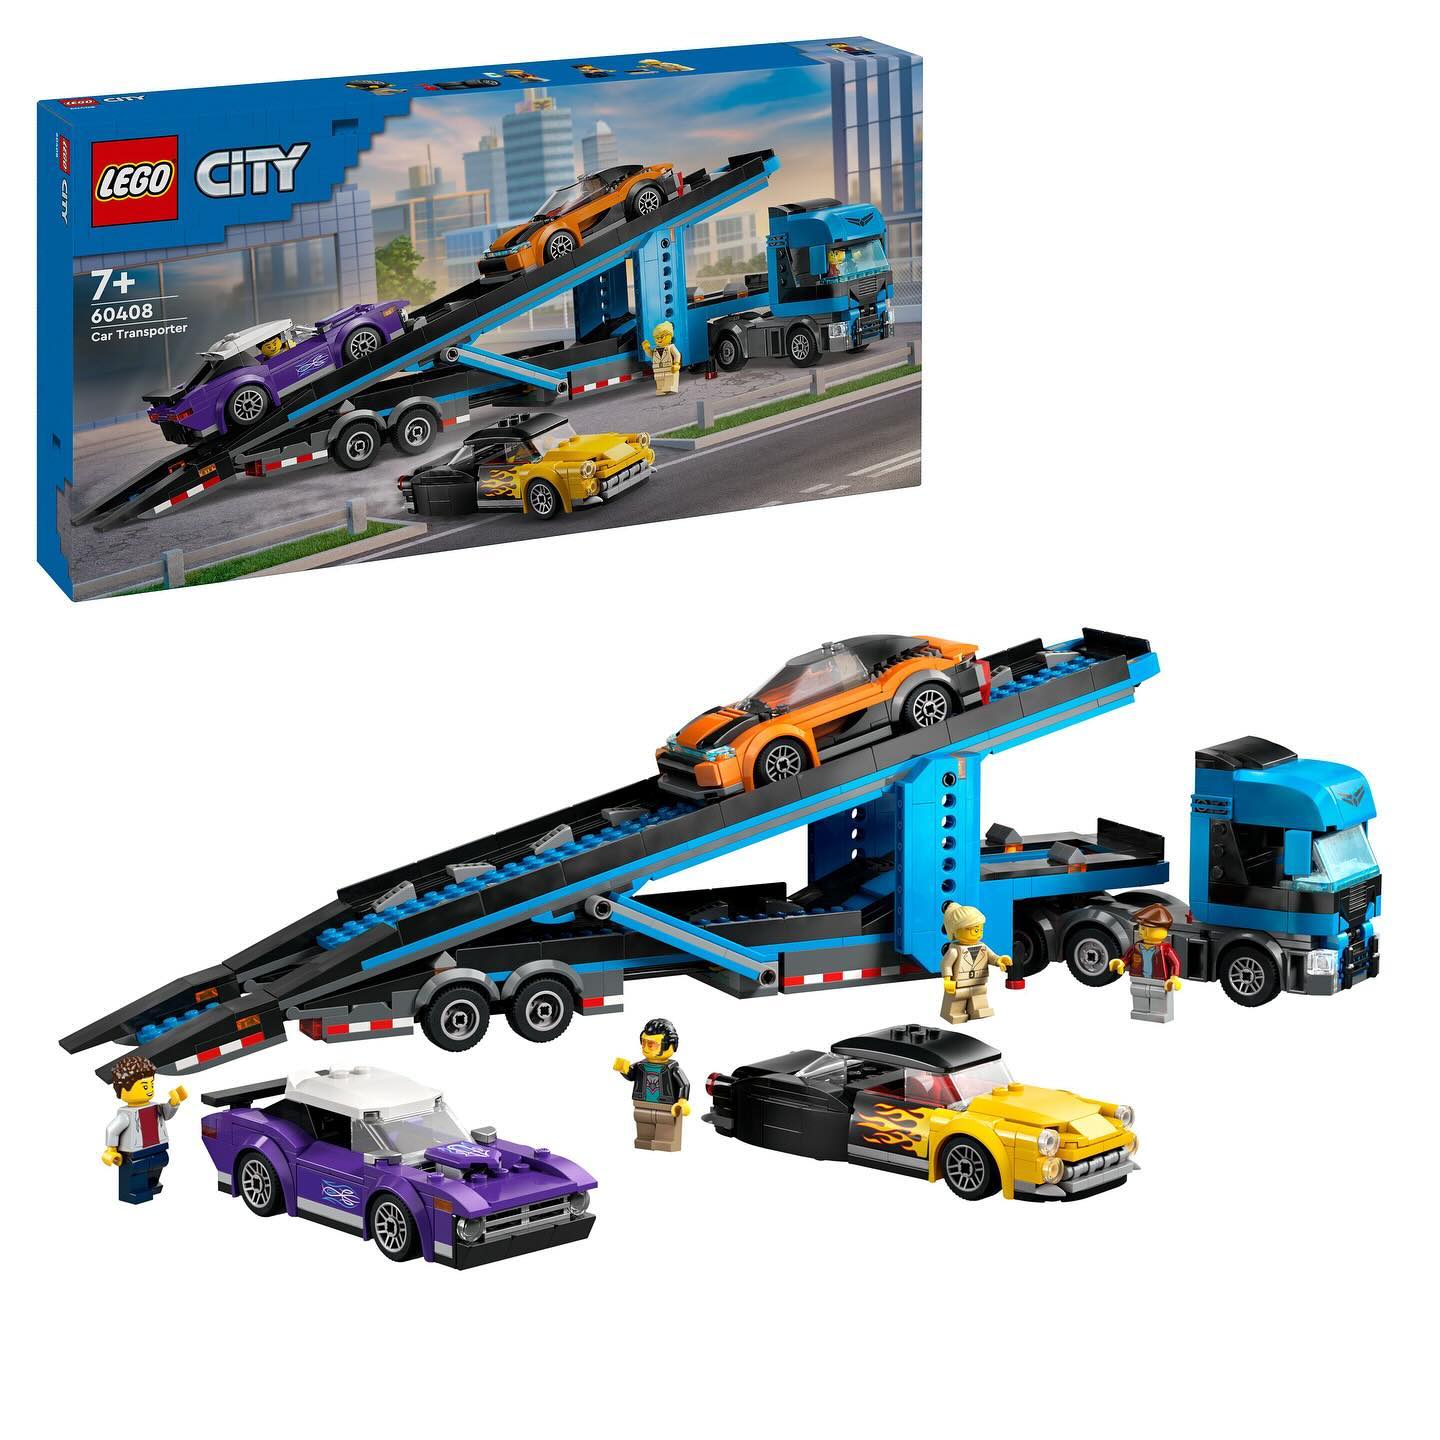 LEGO City Car Transporter 60408